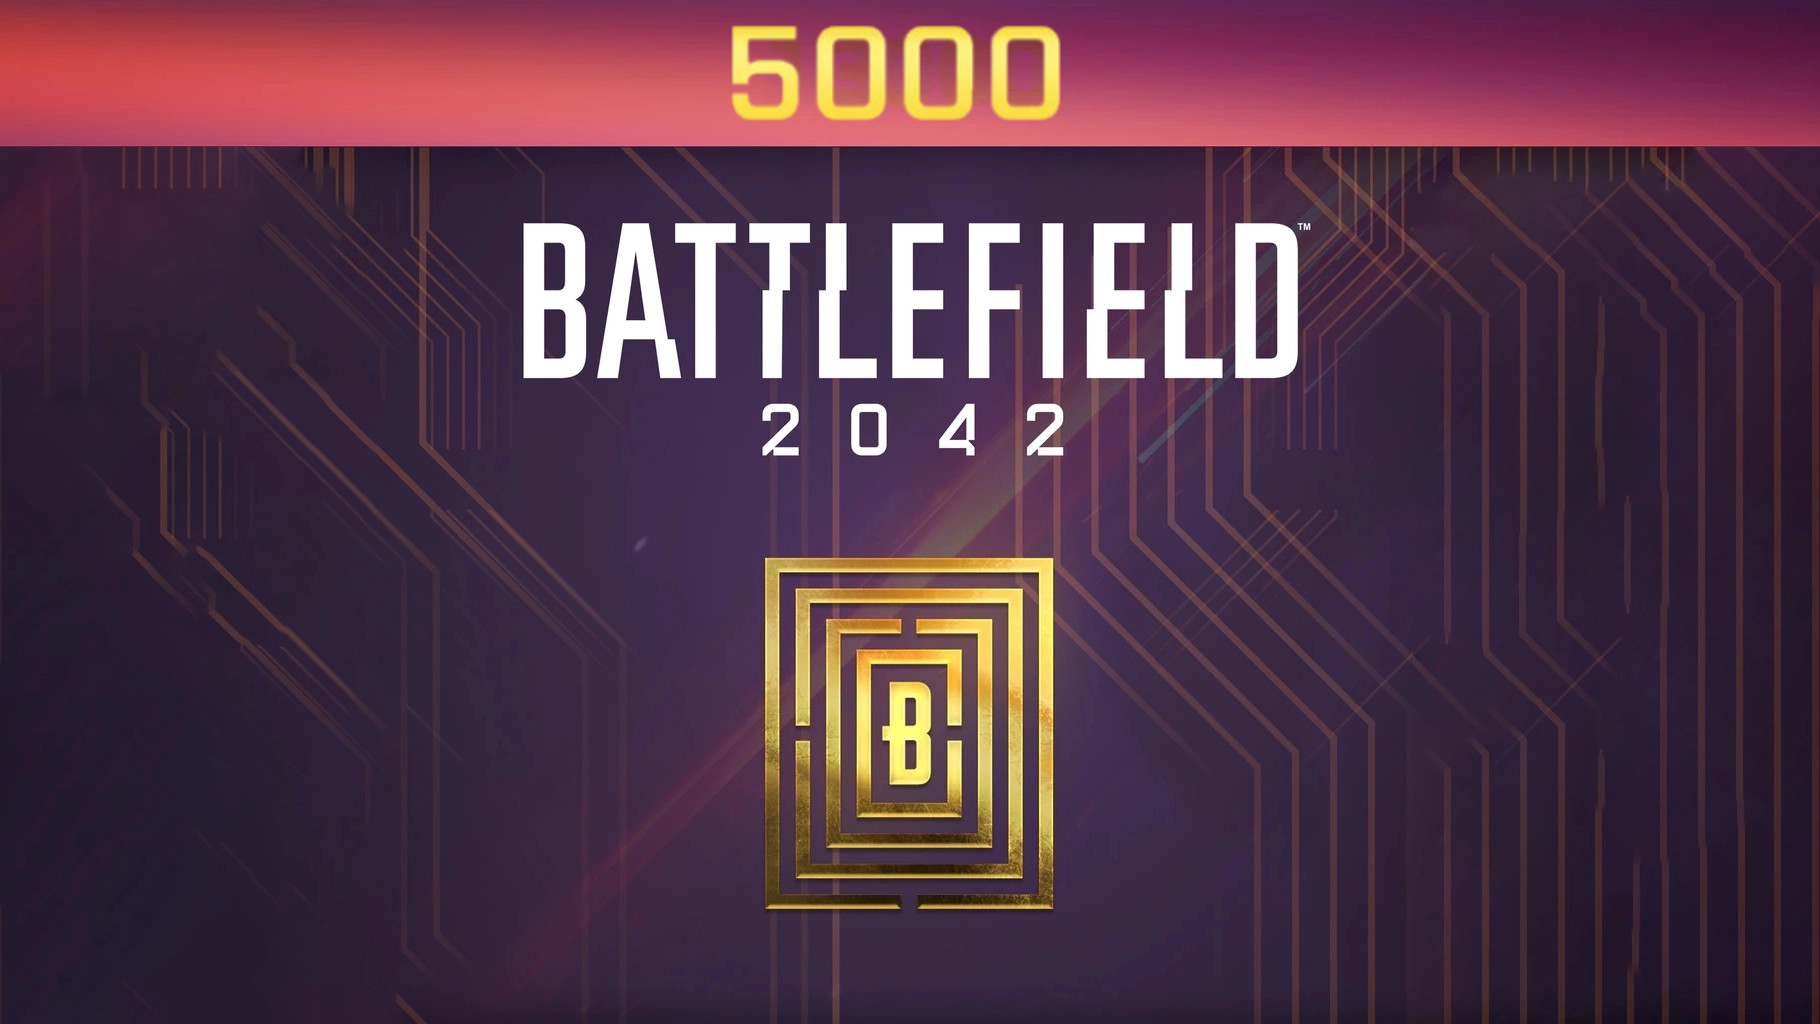 Battlefield 2042 - 5000 BFC Balance XBOX One / Xbox Series X|S CD Key 40.67 $